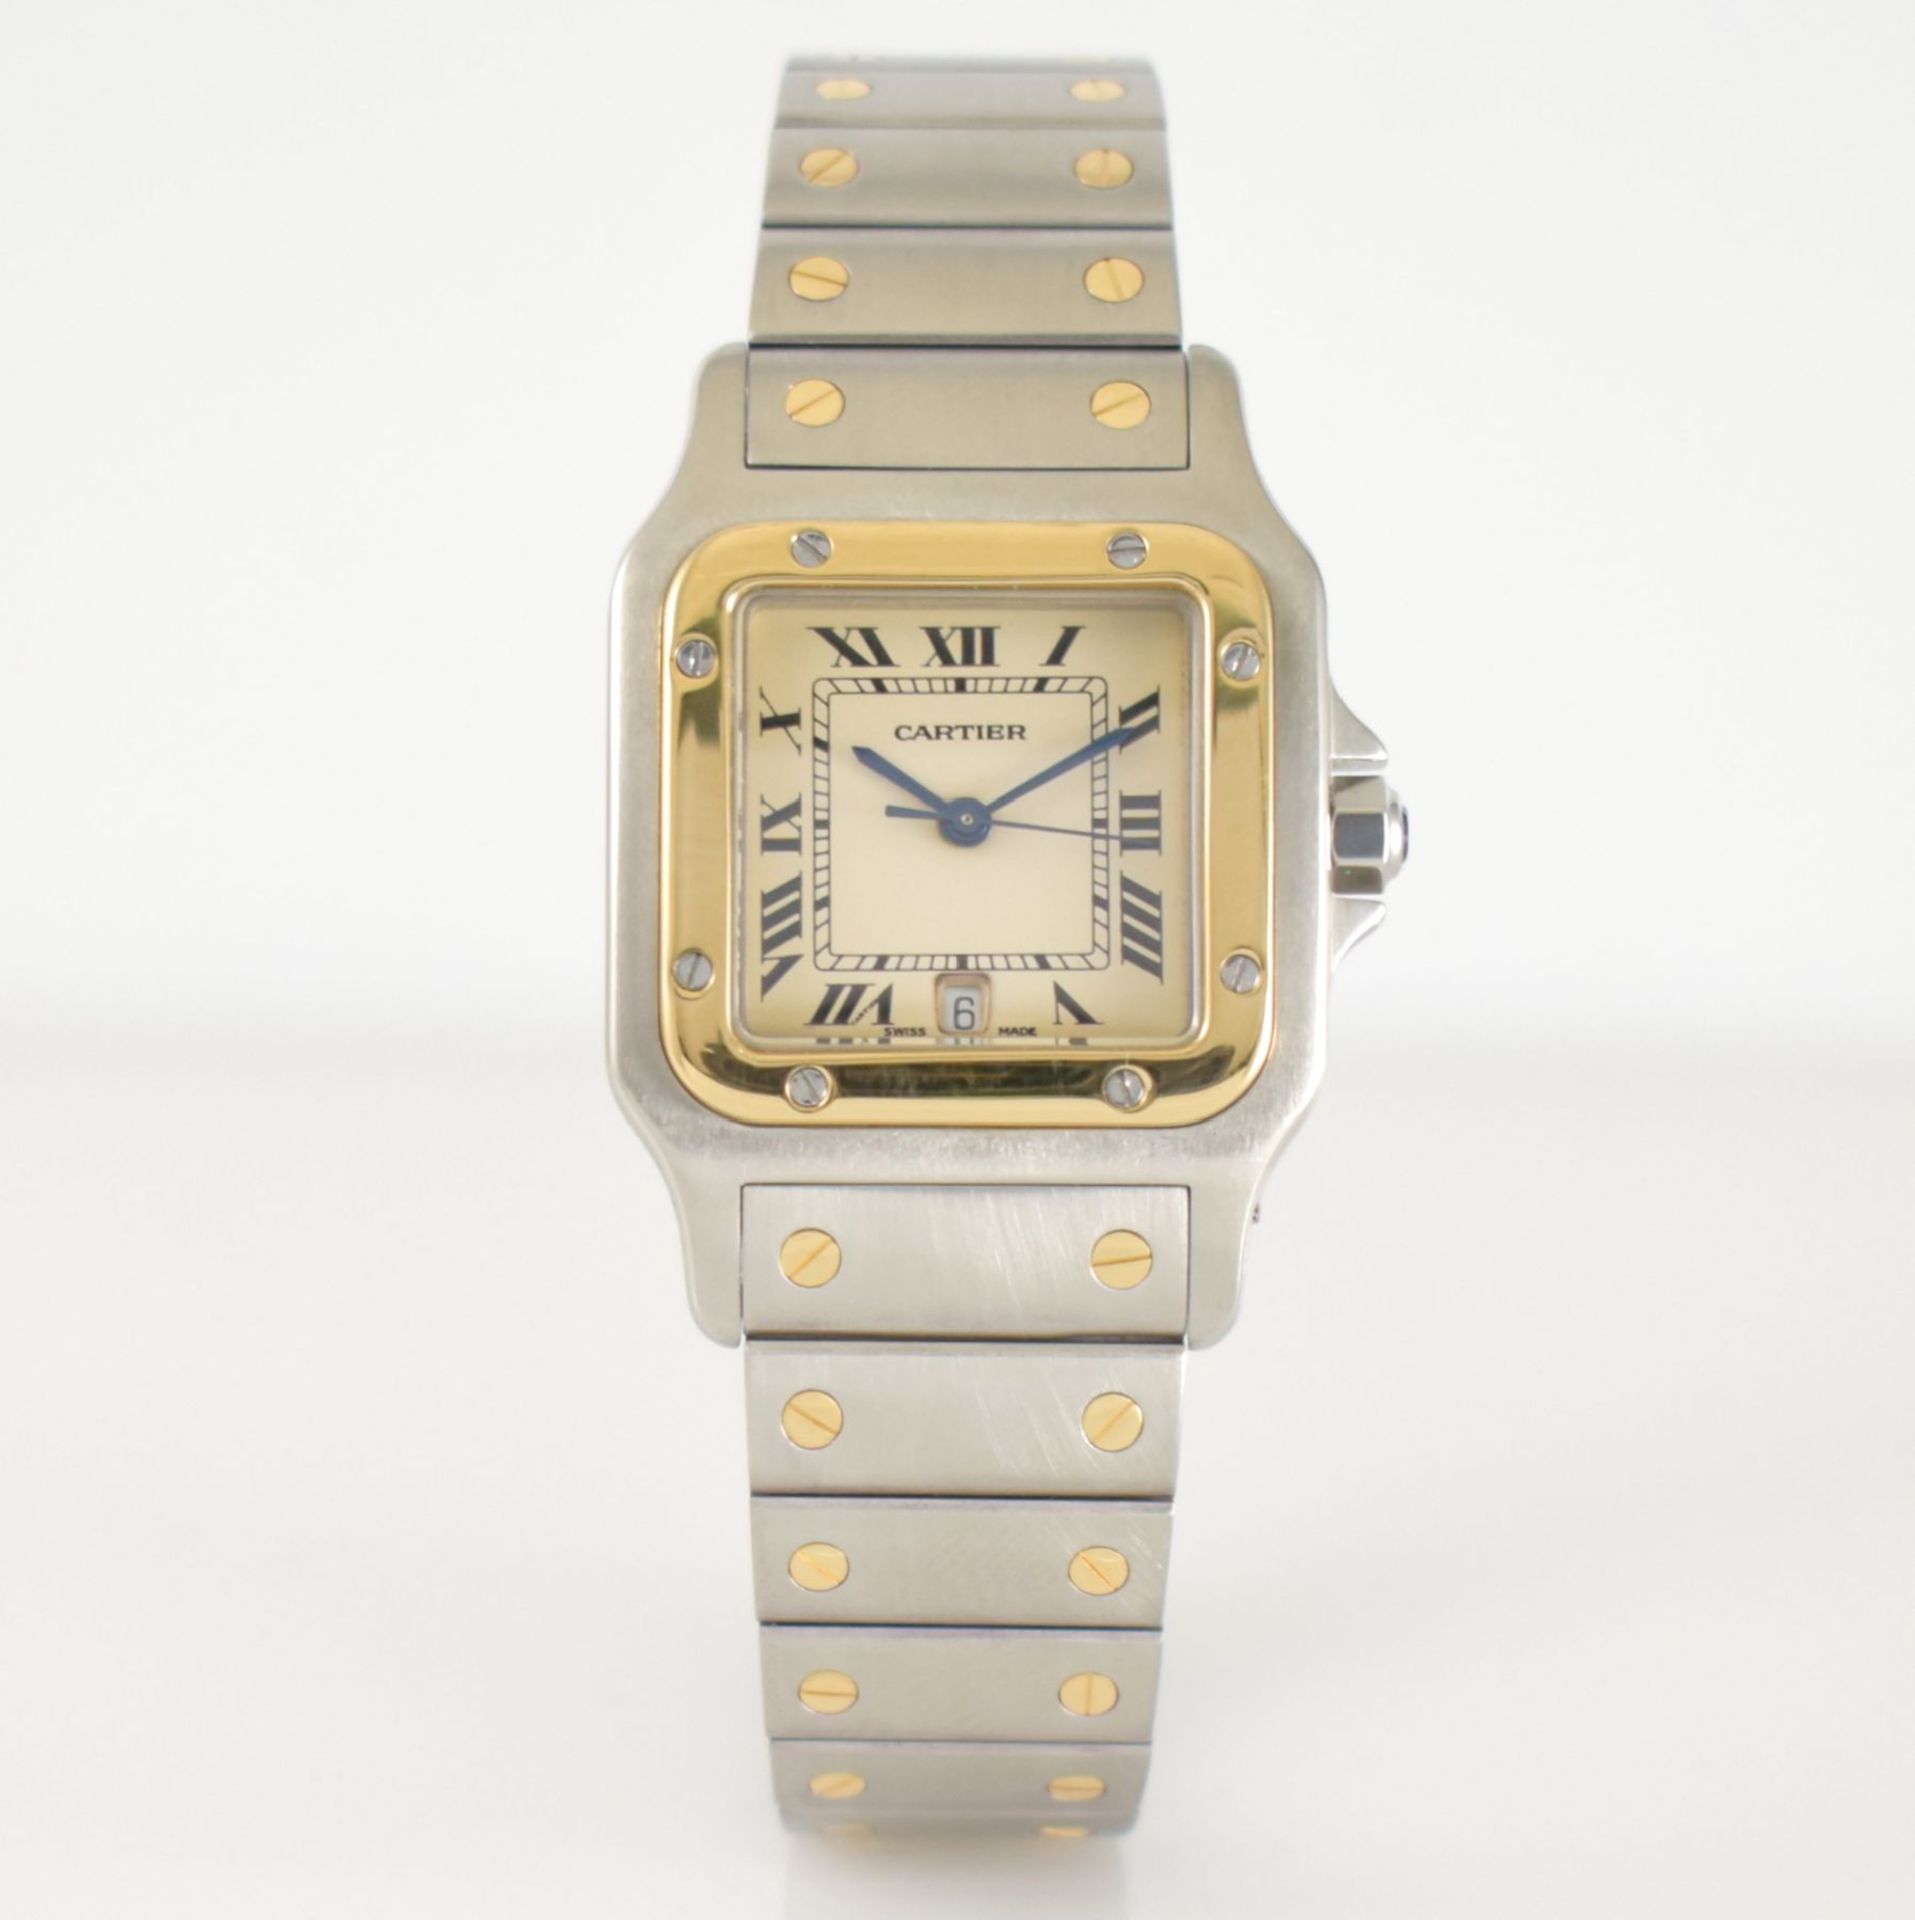 CARTIER Santos Galbee Armbanduhr in Edelstahl & GG 750/000, Schweiz um 1995, quarz, Boden 8-fach - Bild 3 aus 6